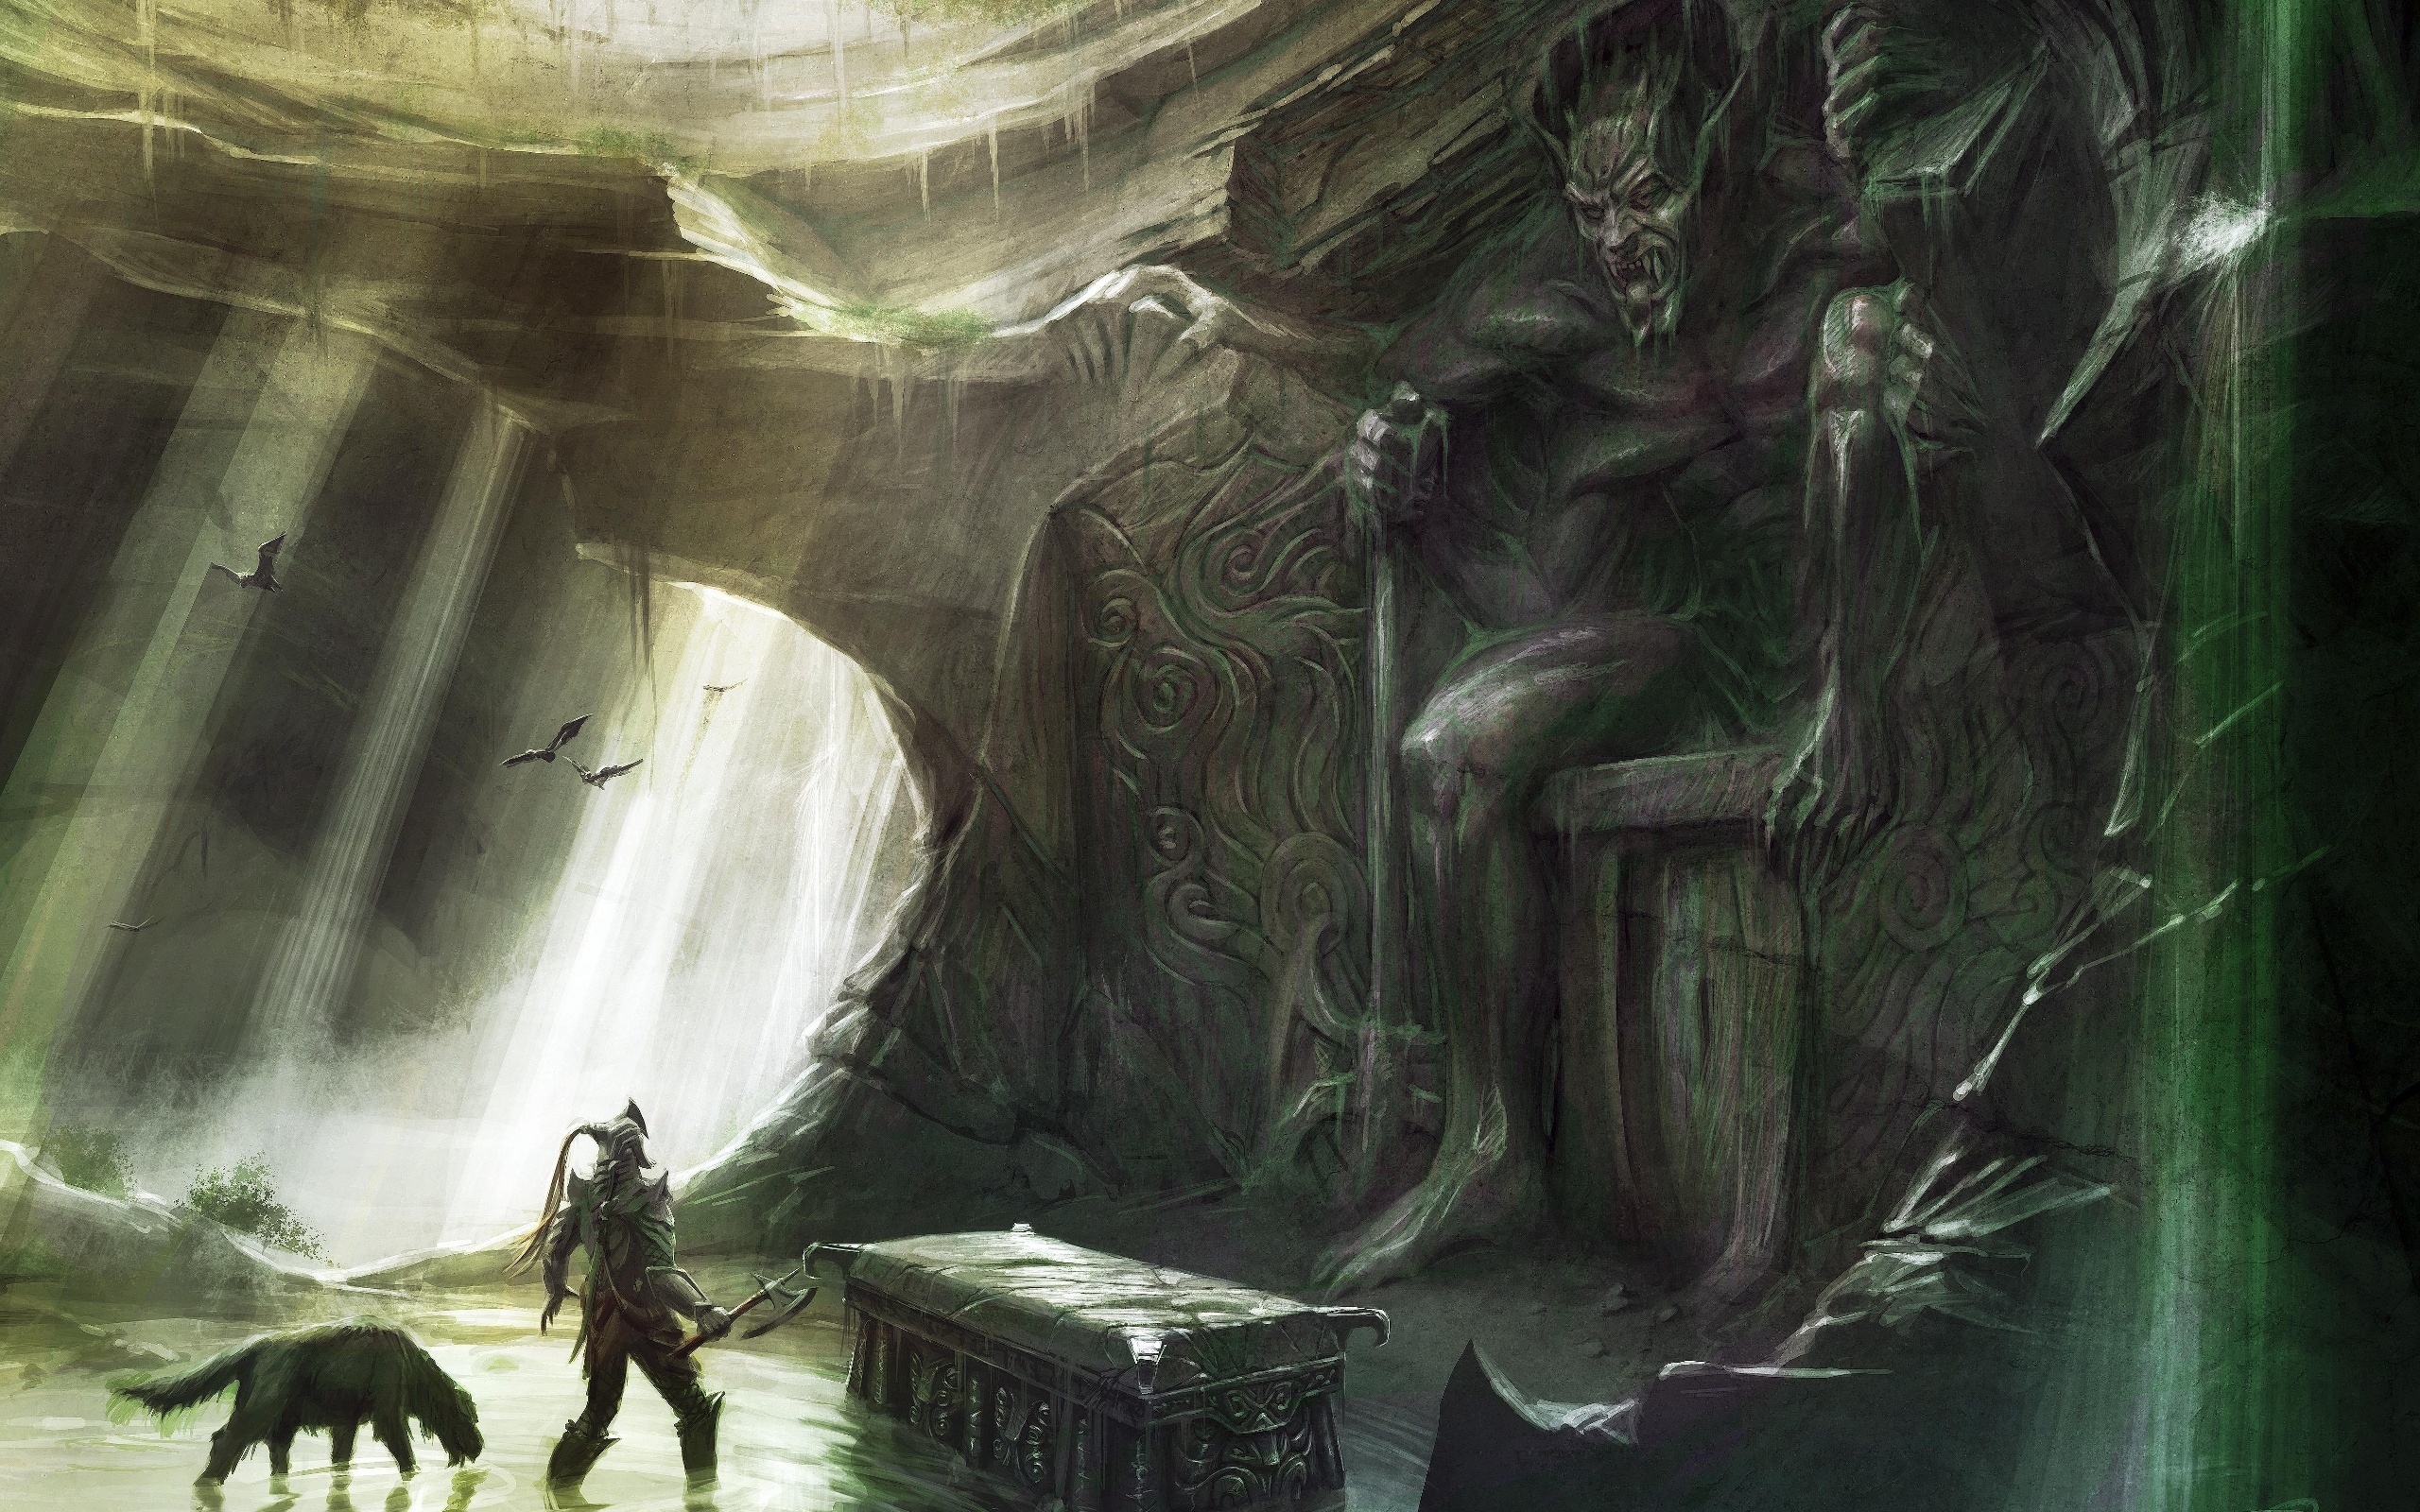  The Elder Scrolls V: Skyrim Full HD Wallpaper